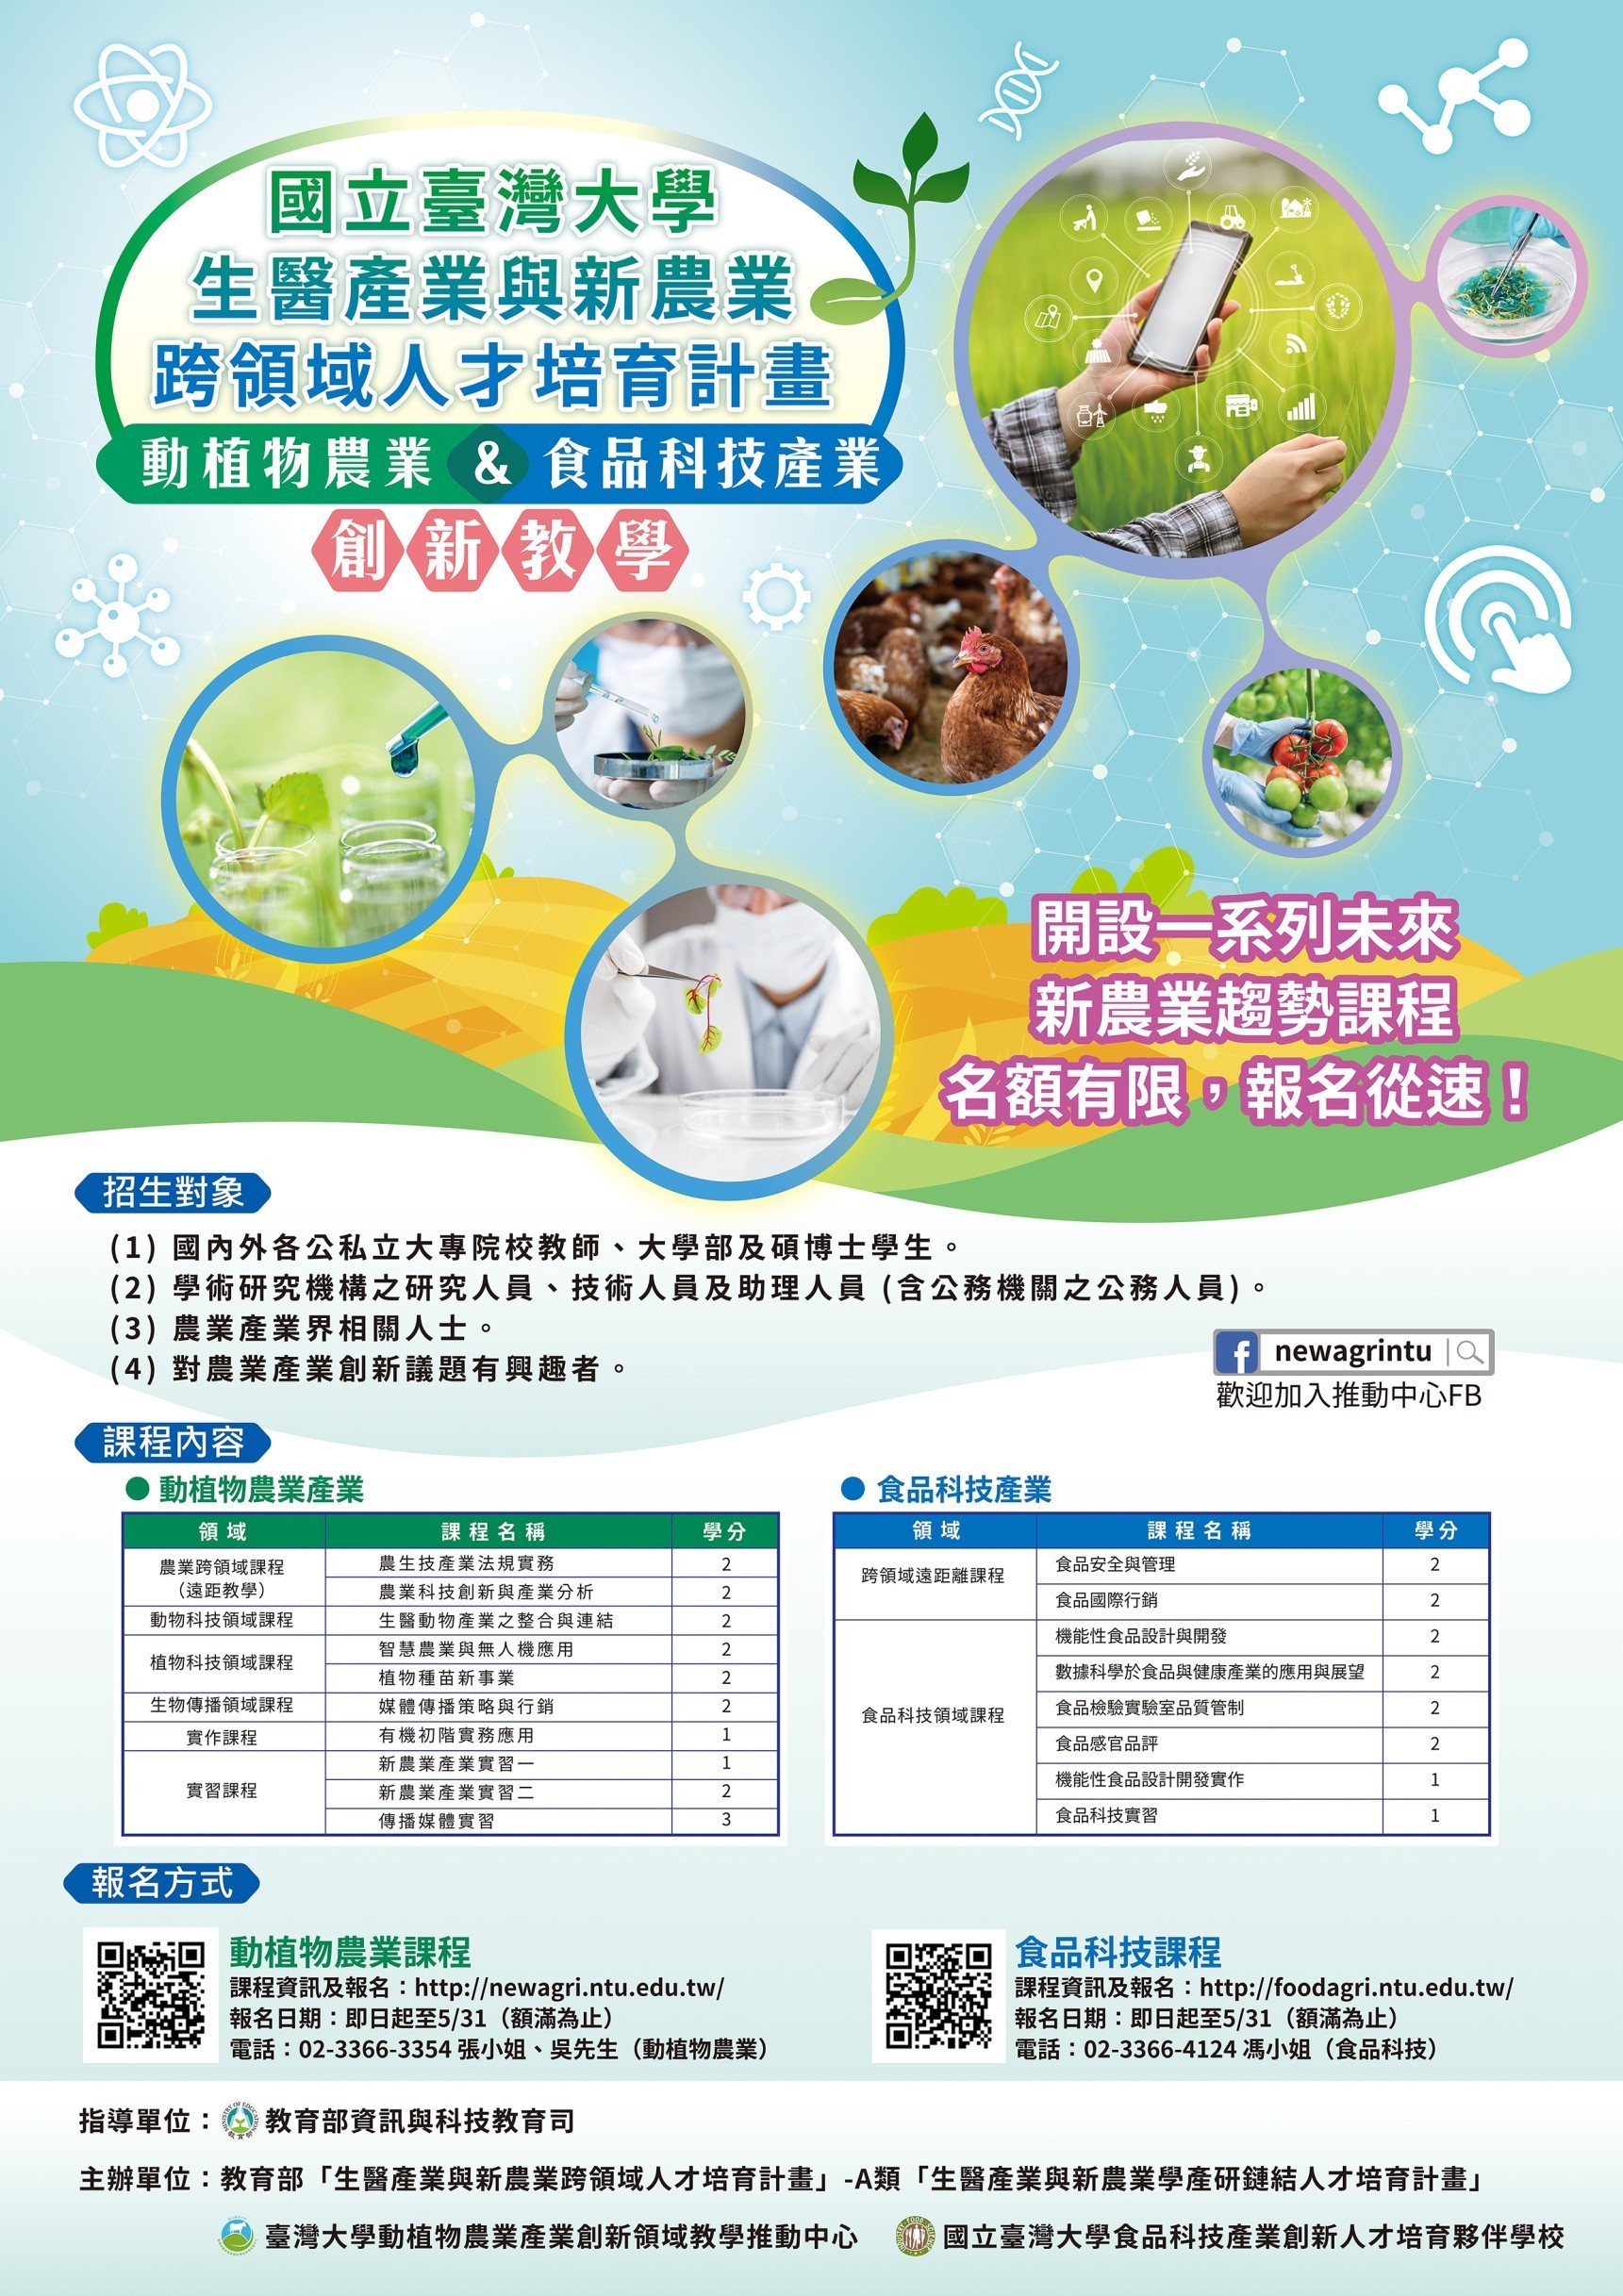 國立臺灣大學生醫產業與新農業跨領域人才培育計畫課程海報2021.jpg